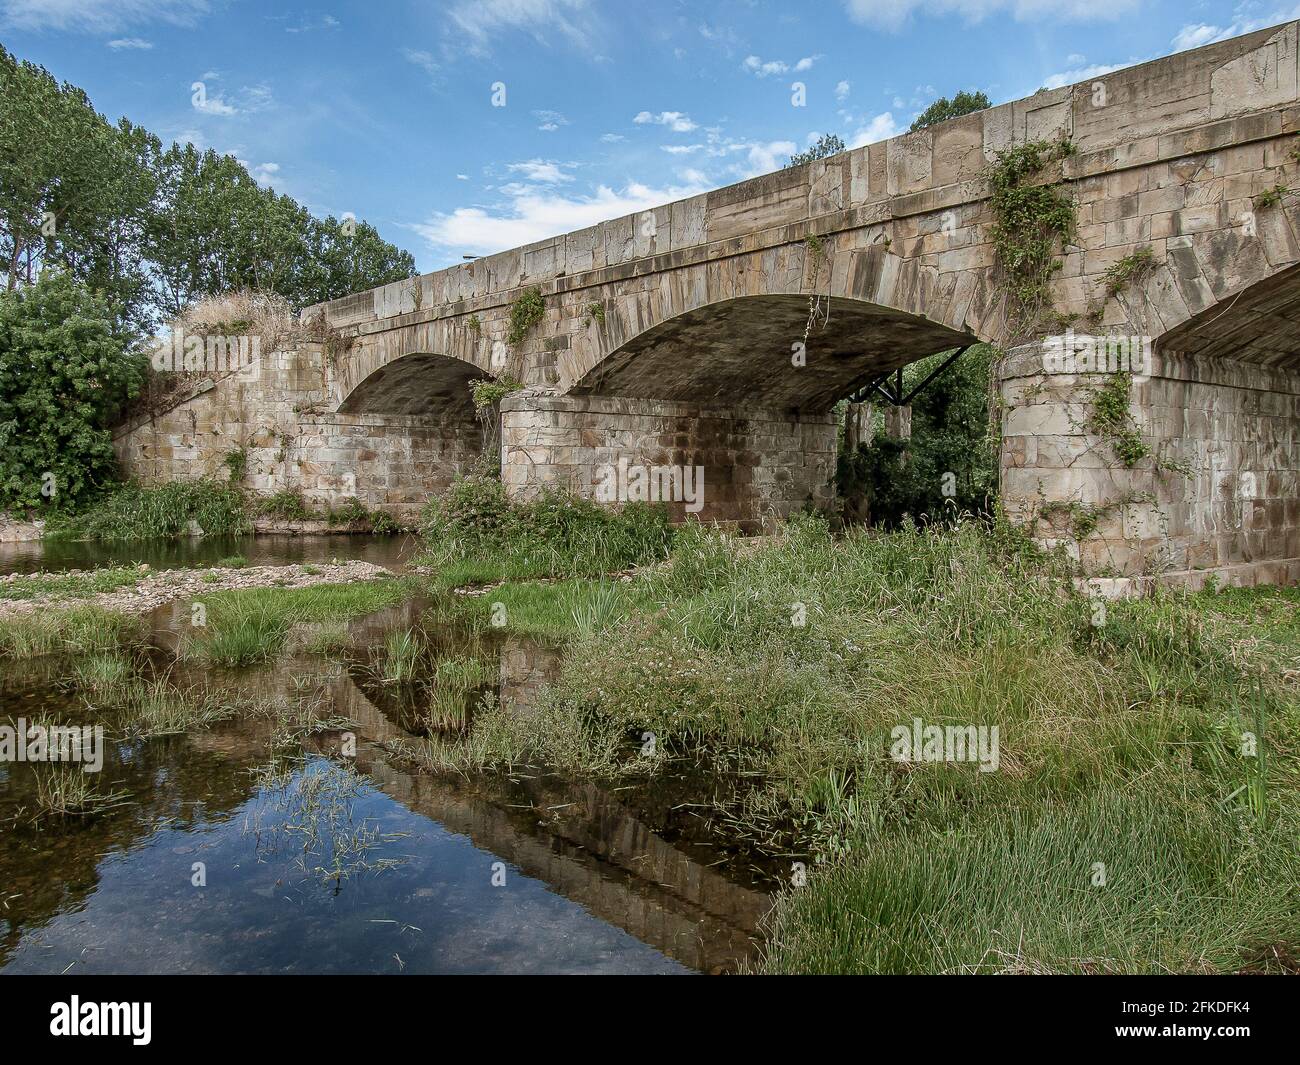 Puente de Orbigo reflecting in the river at Hospital de Orbigo, Spain, July 16, 2010 Stock Photo